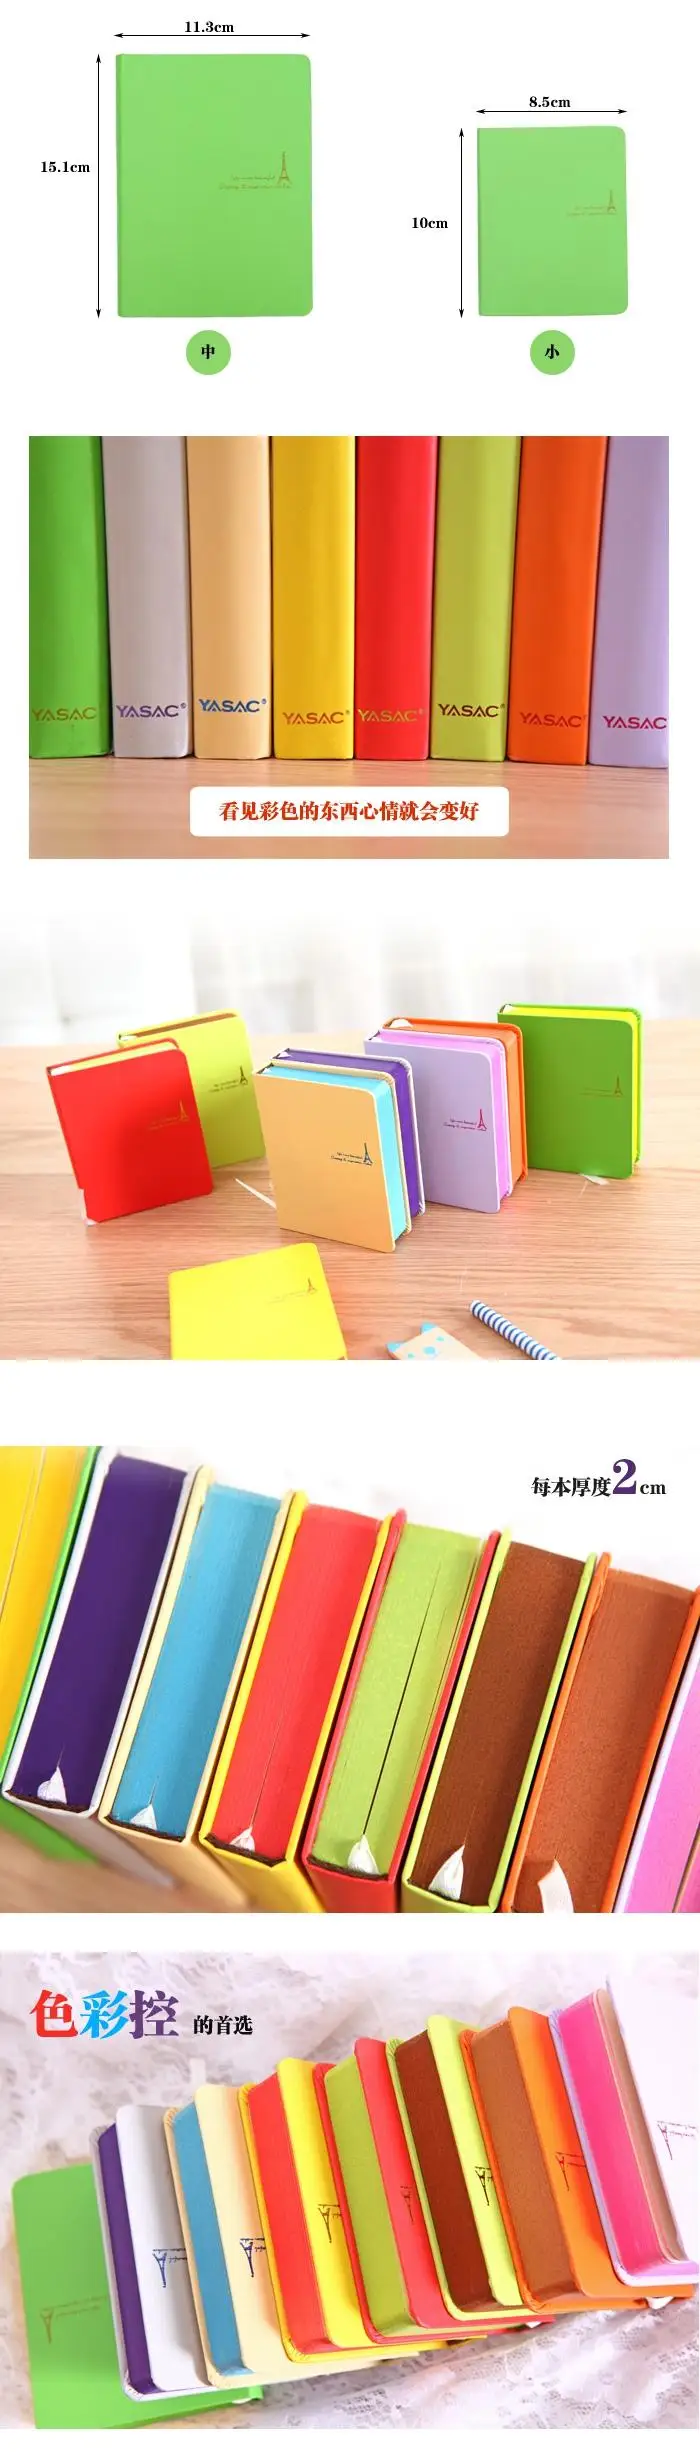 Хит, кожаный дневник, школьный блокнот, блокнот, бумажная записная книжка, креативный блокнот, офисные школьные принадлежности, блокнот, подарок